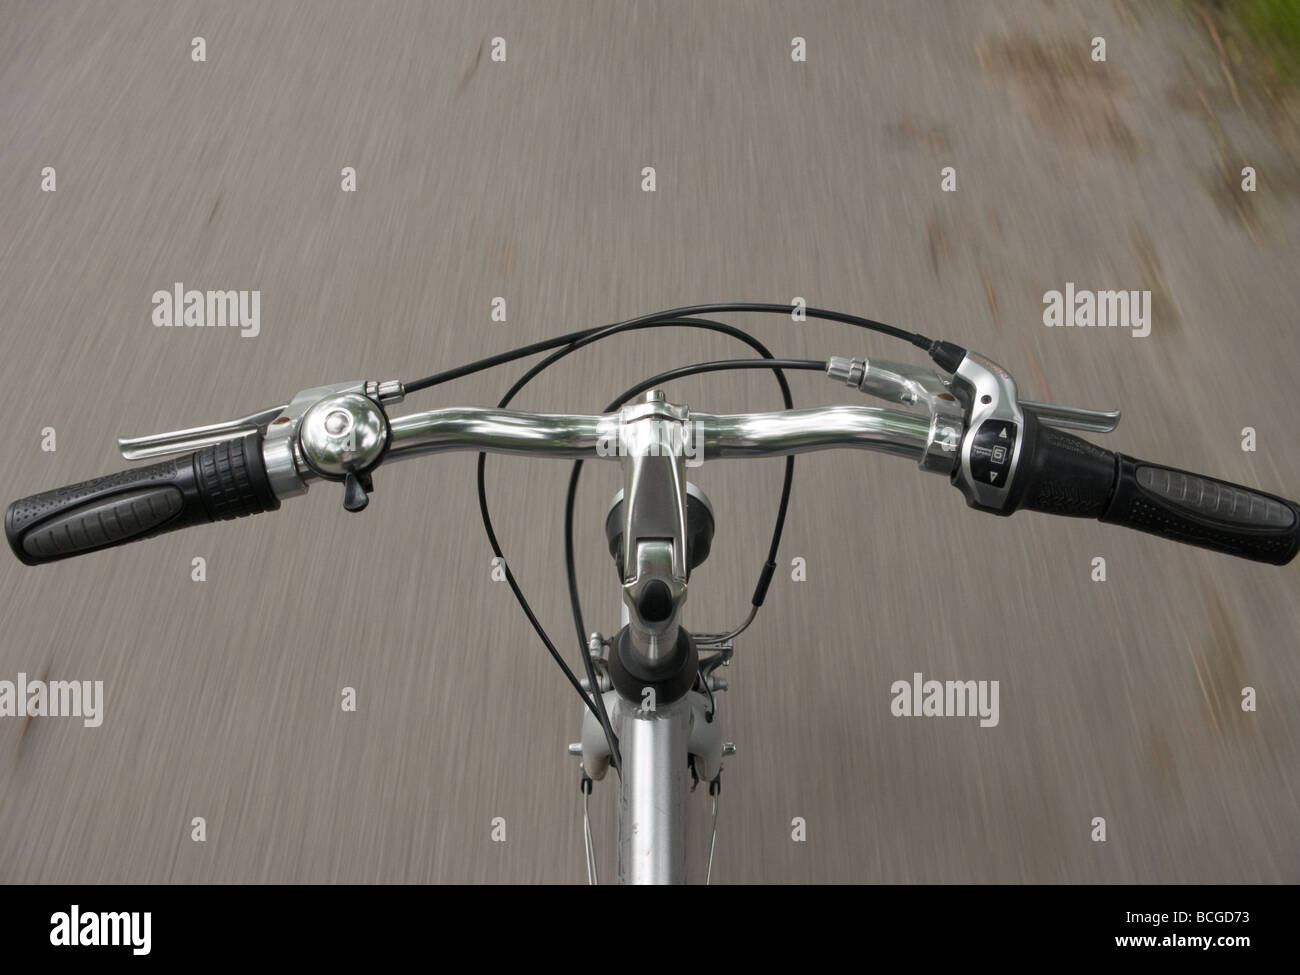 Ein Fahrrad ohne Hände am Lenker Stockfotografie - Alamy